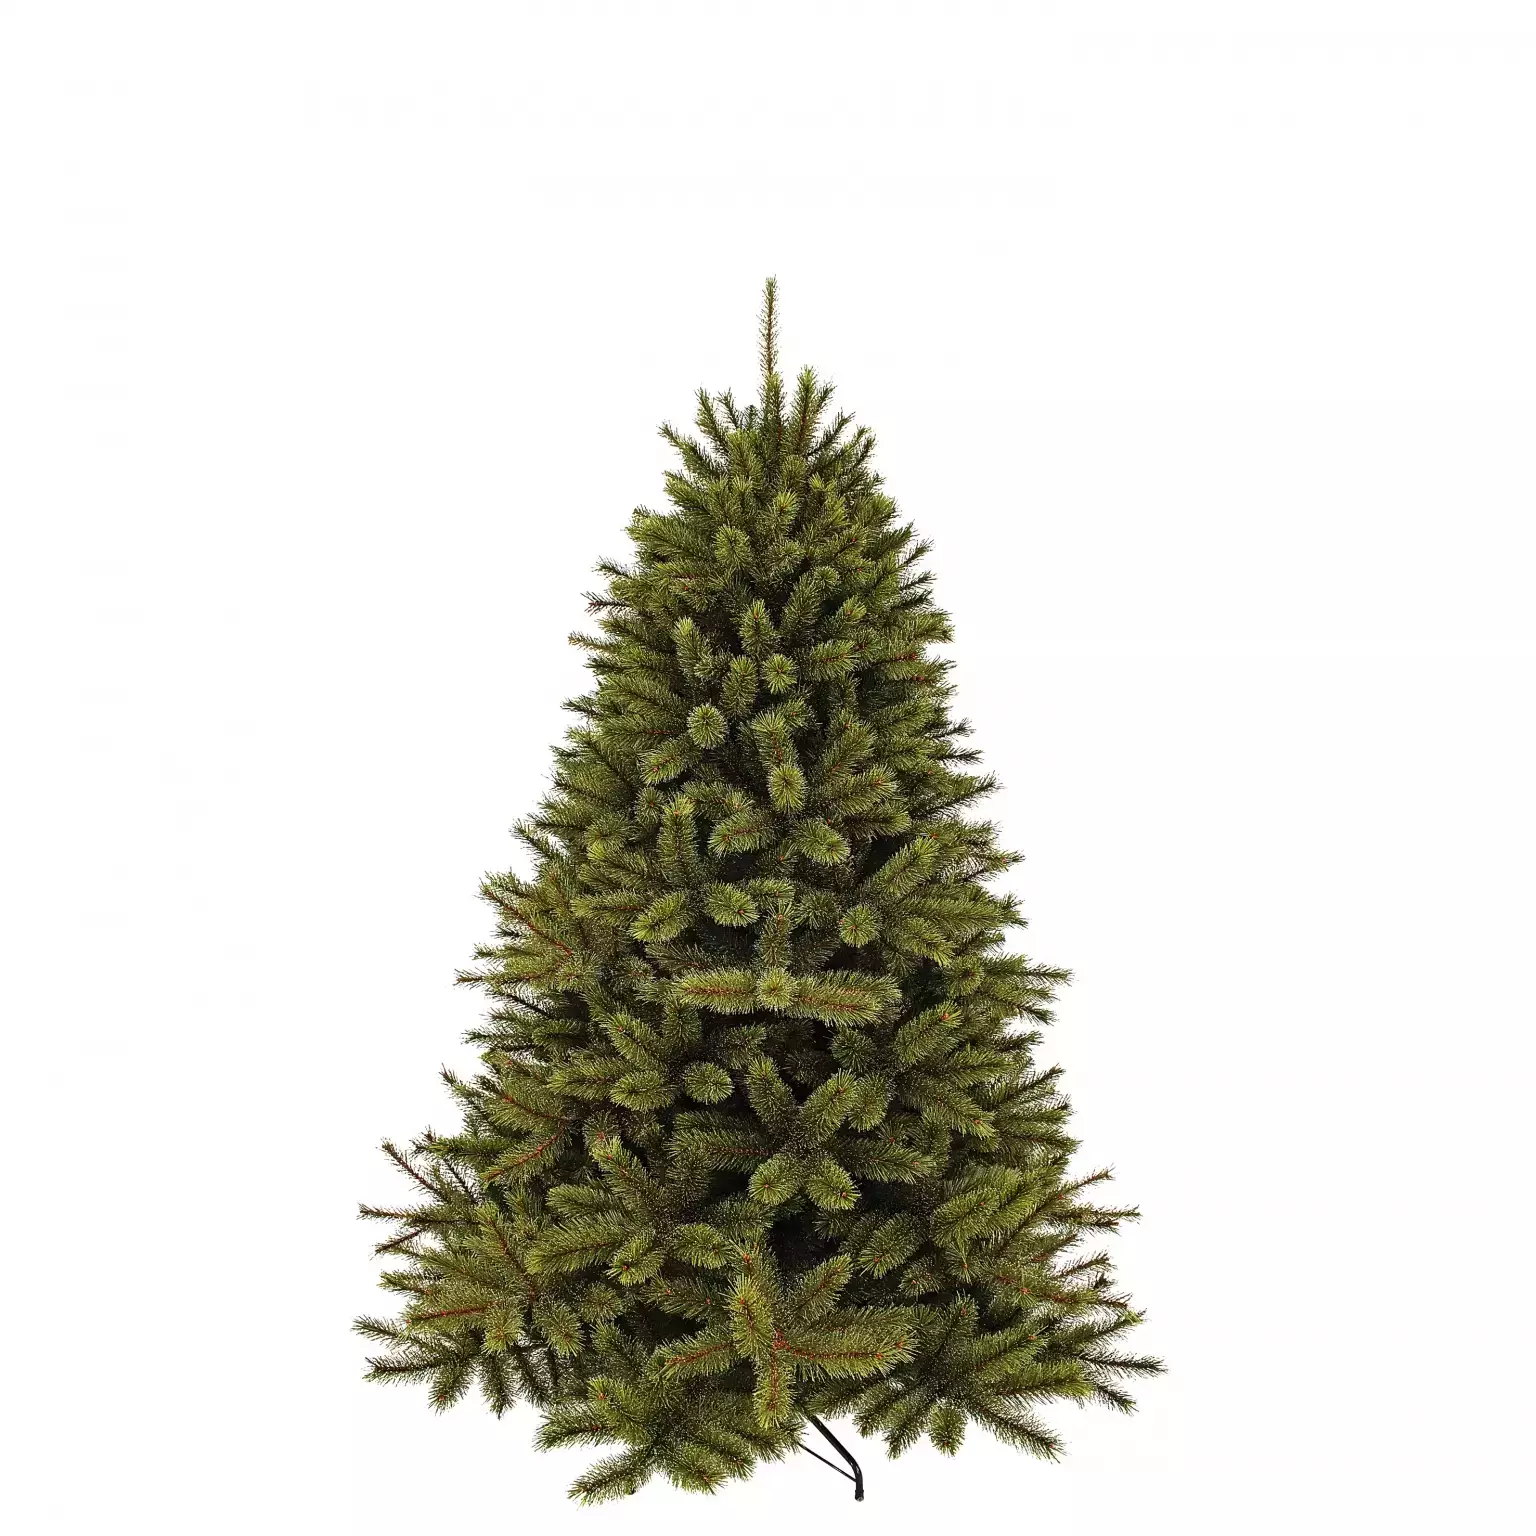 Vermelding Gewend Uitlijnen Kerstboom frosted pine d130h185cm groen - Top Tuincentrum